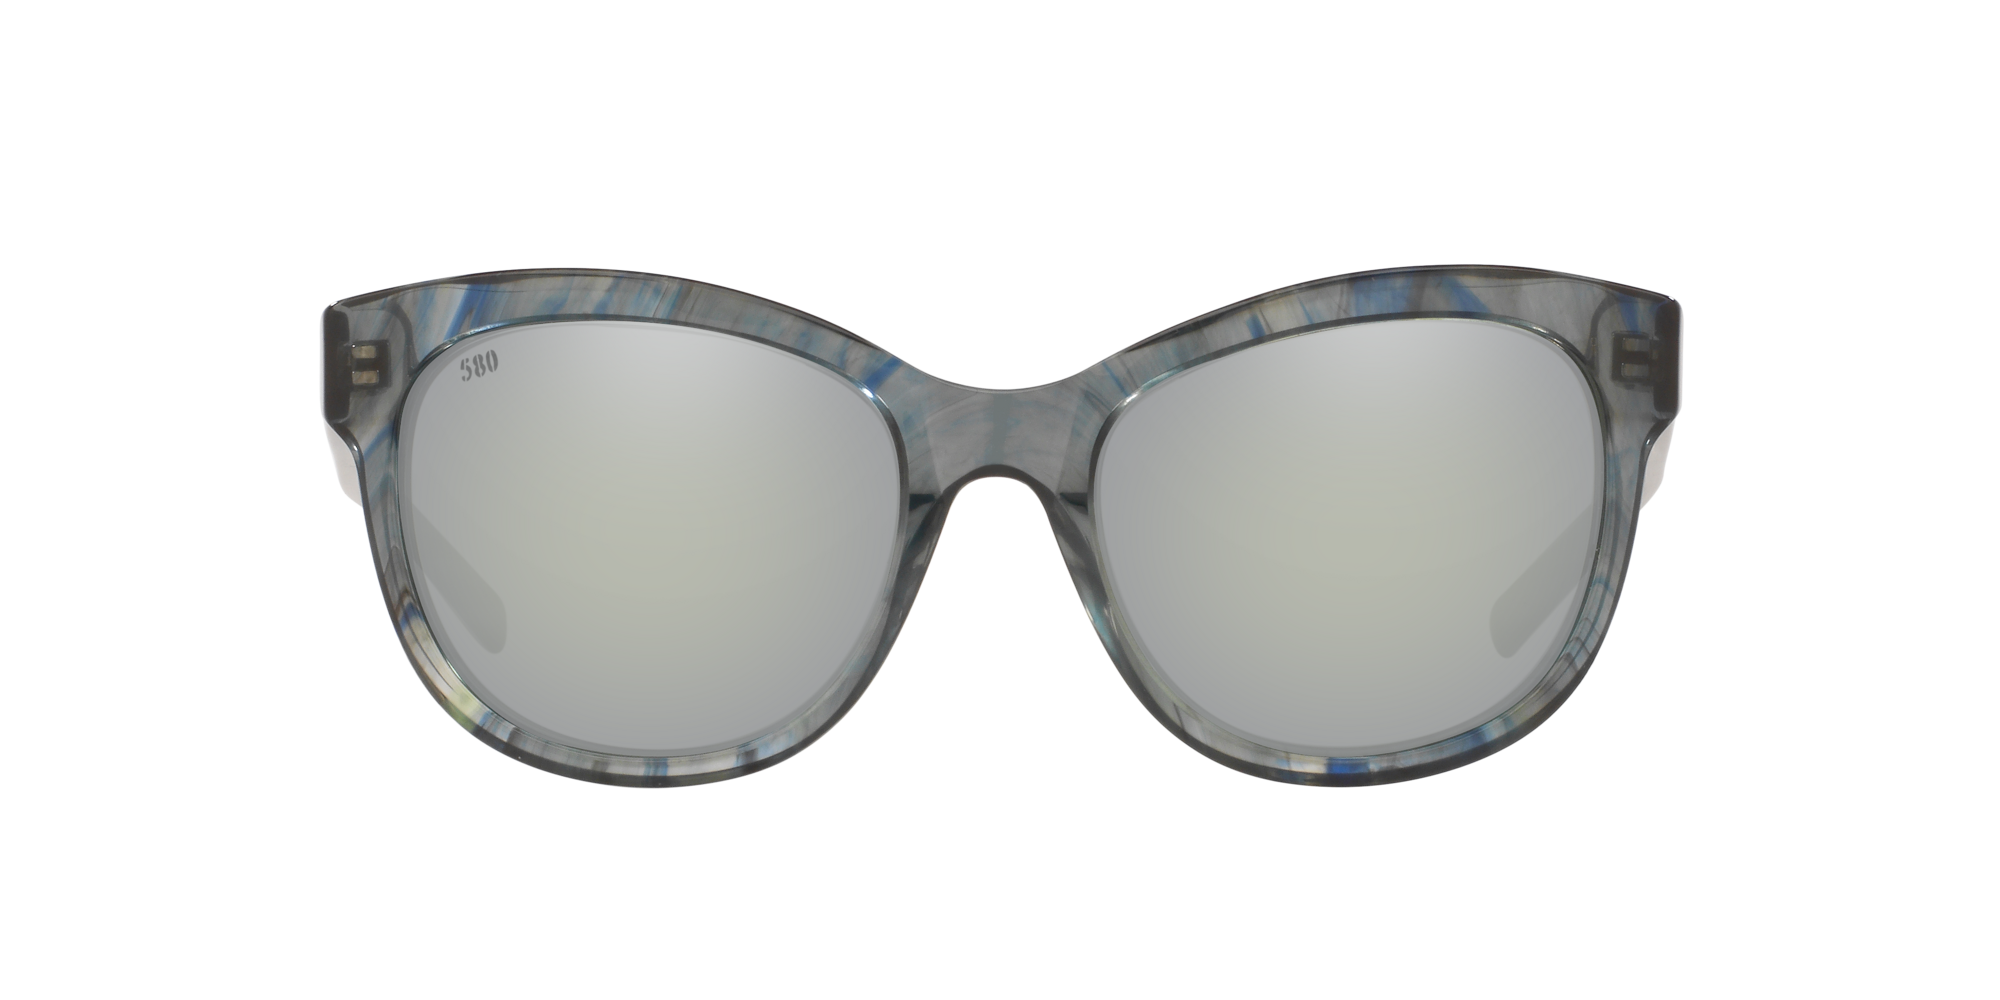 Bimini Polarized Sunglasses in Gray Silver Mirror | Costa Del Mar®